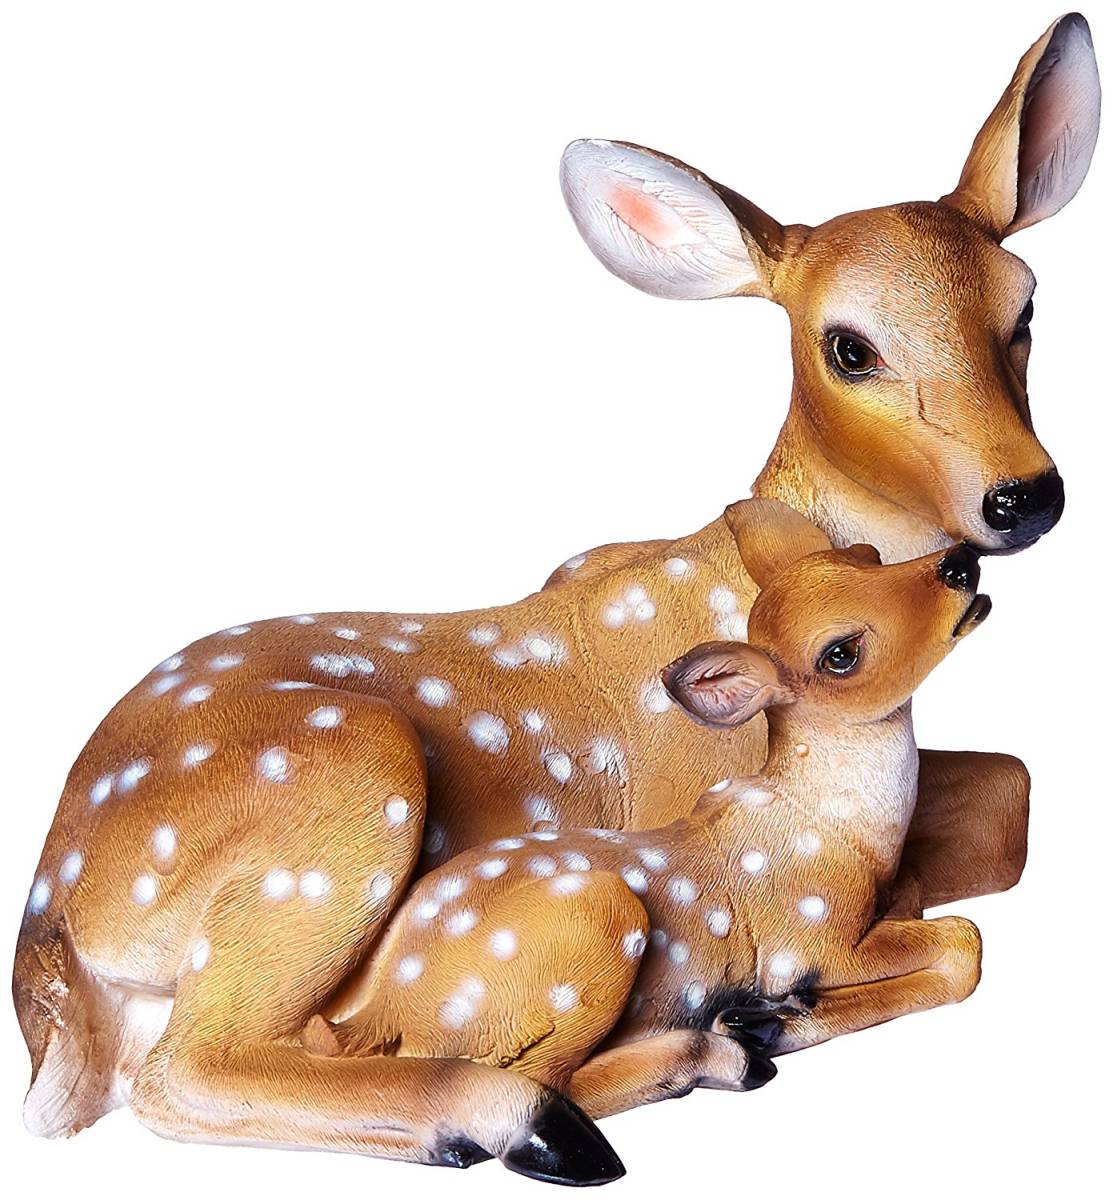 母鹿と子鹿 小鹿彫刻置物バンビアクセント雑貨アウトドア対応ガーデン庭園オーナメントデコレーション雑貨アニマル動物生き物自然界親子像